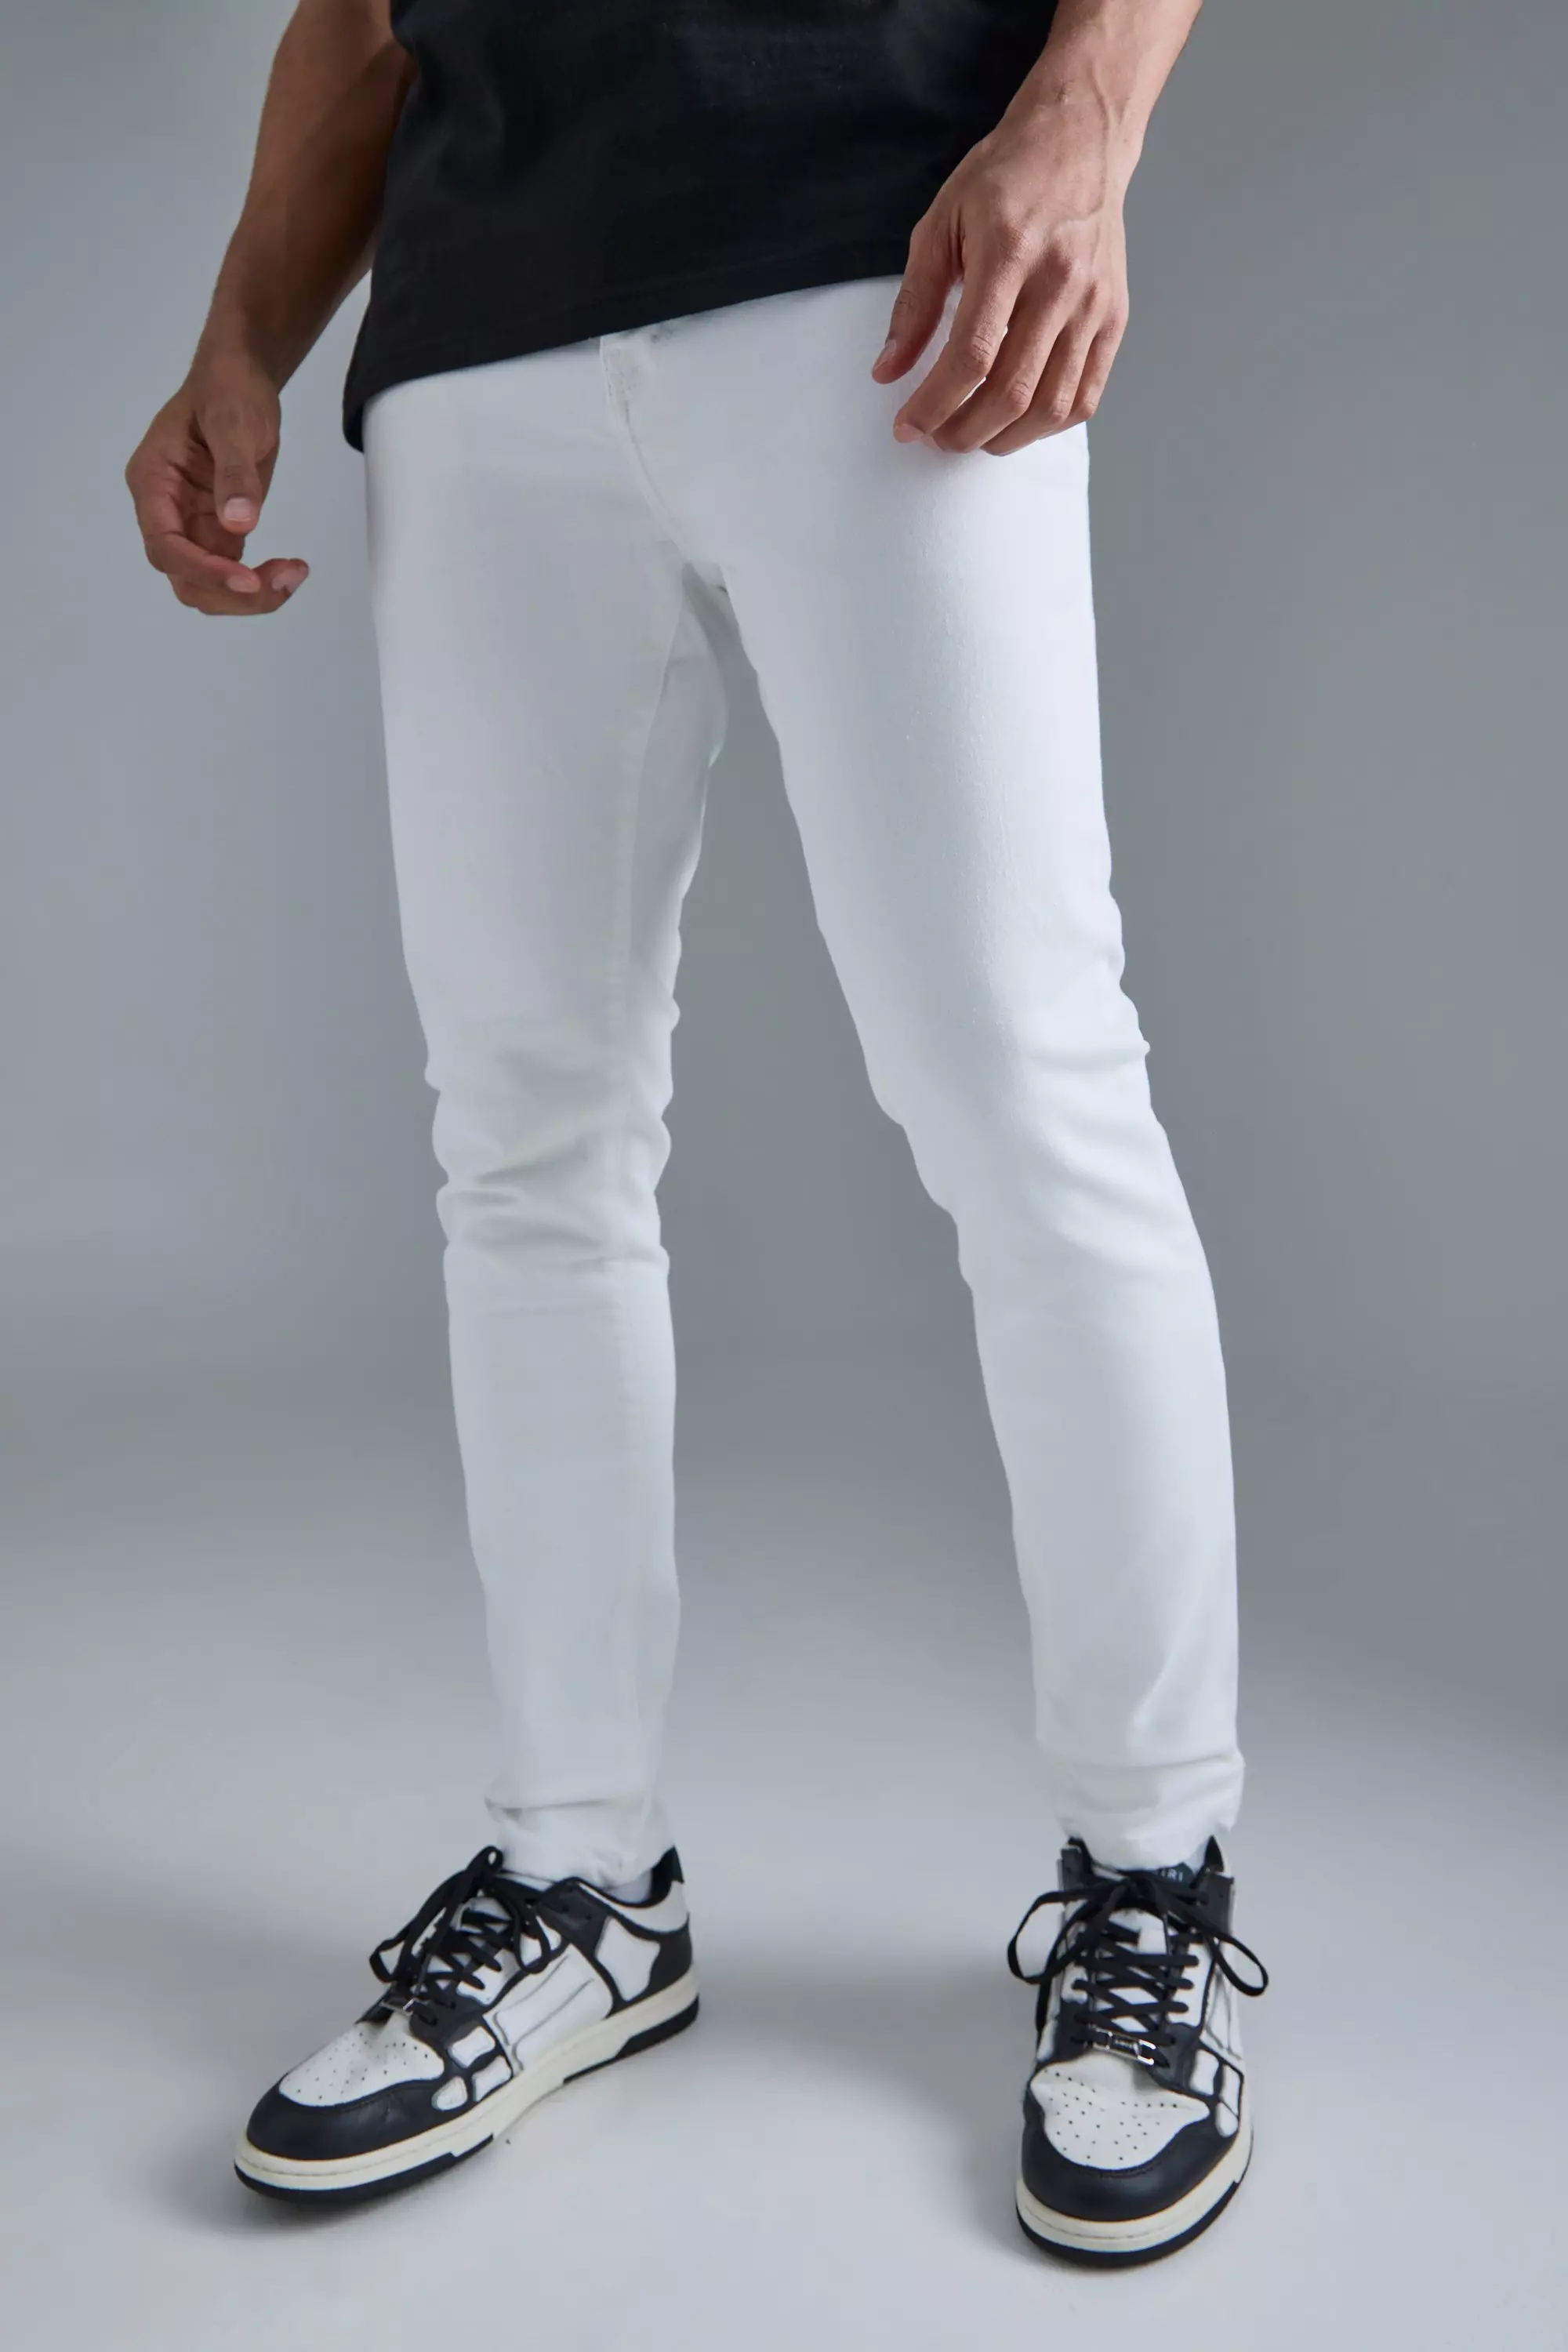 Men's White Jeans